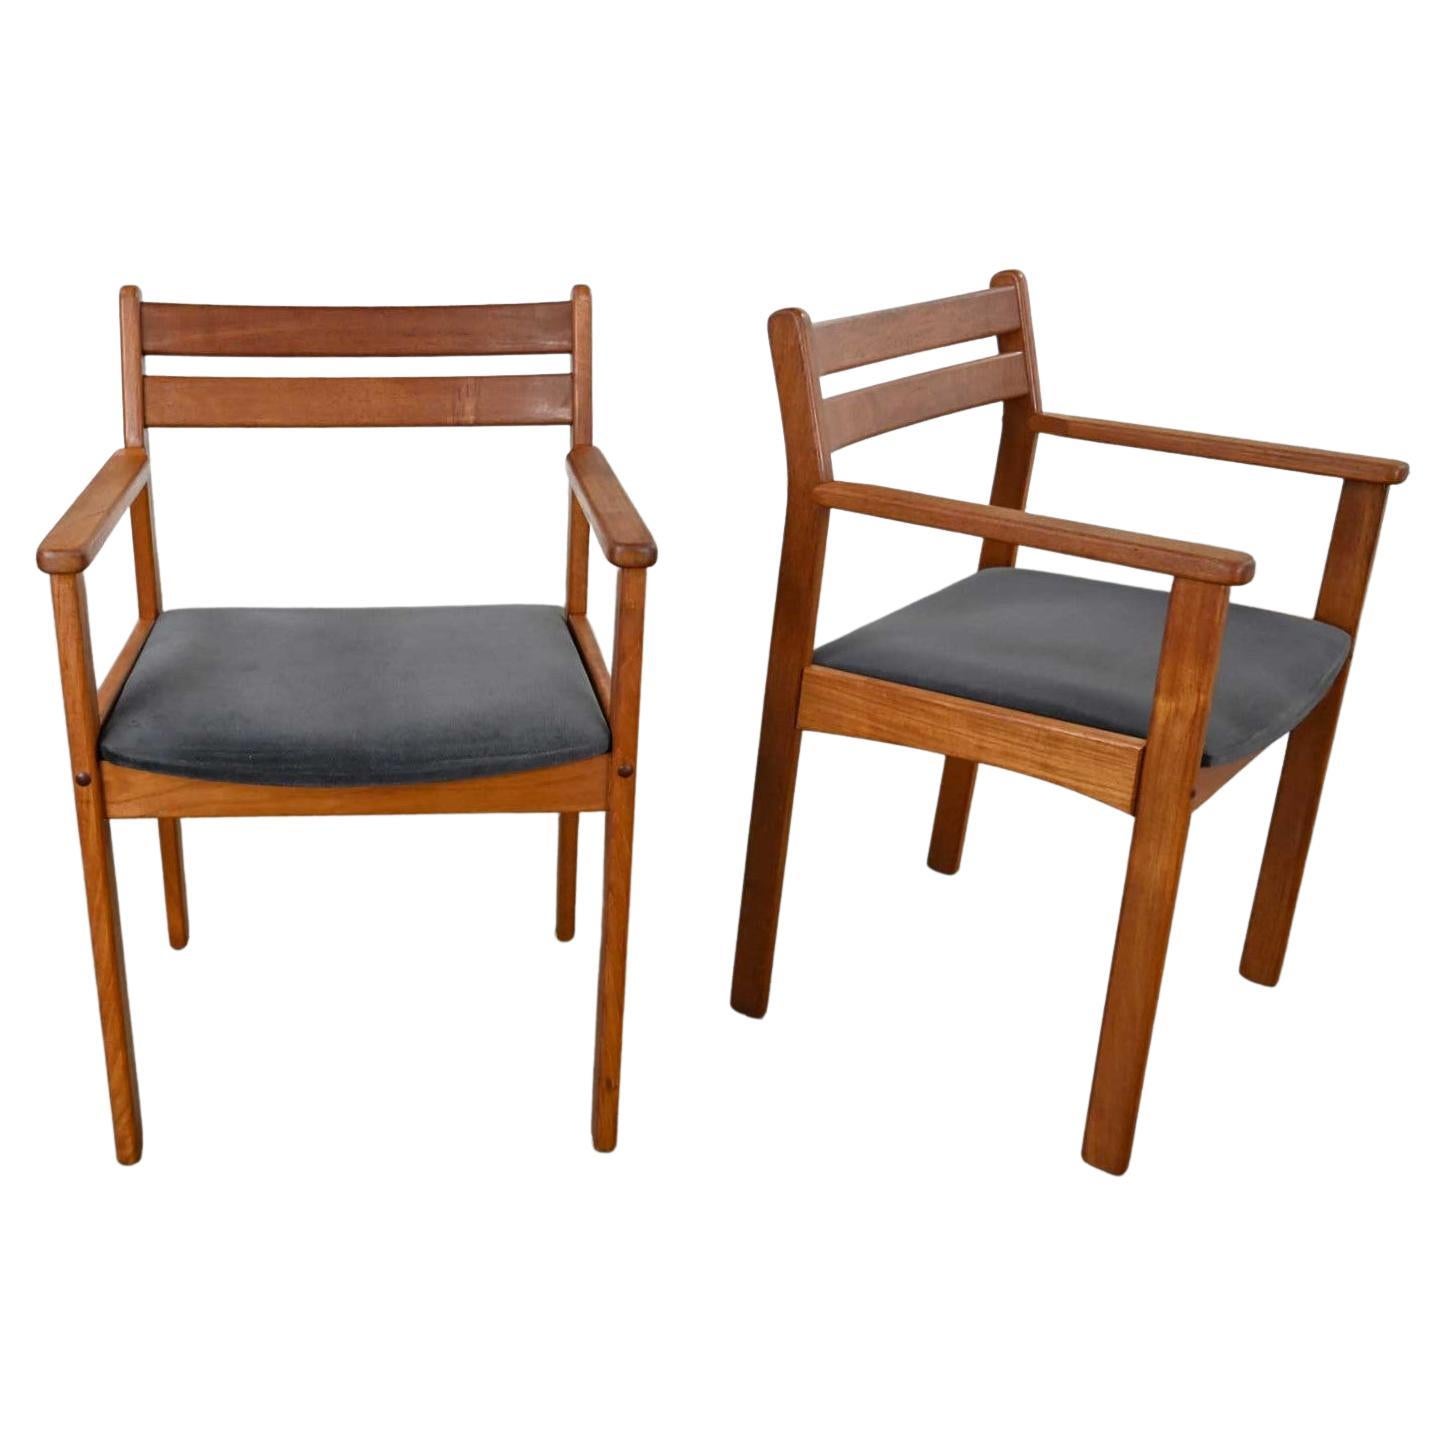 Paire de fauteuils modernes scandinaves en teck avec sièges en tissu anthracite brossé en vente